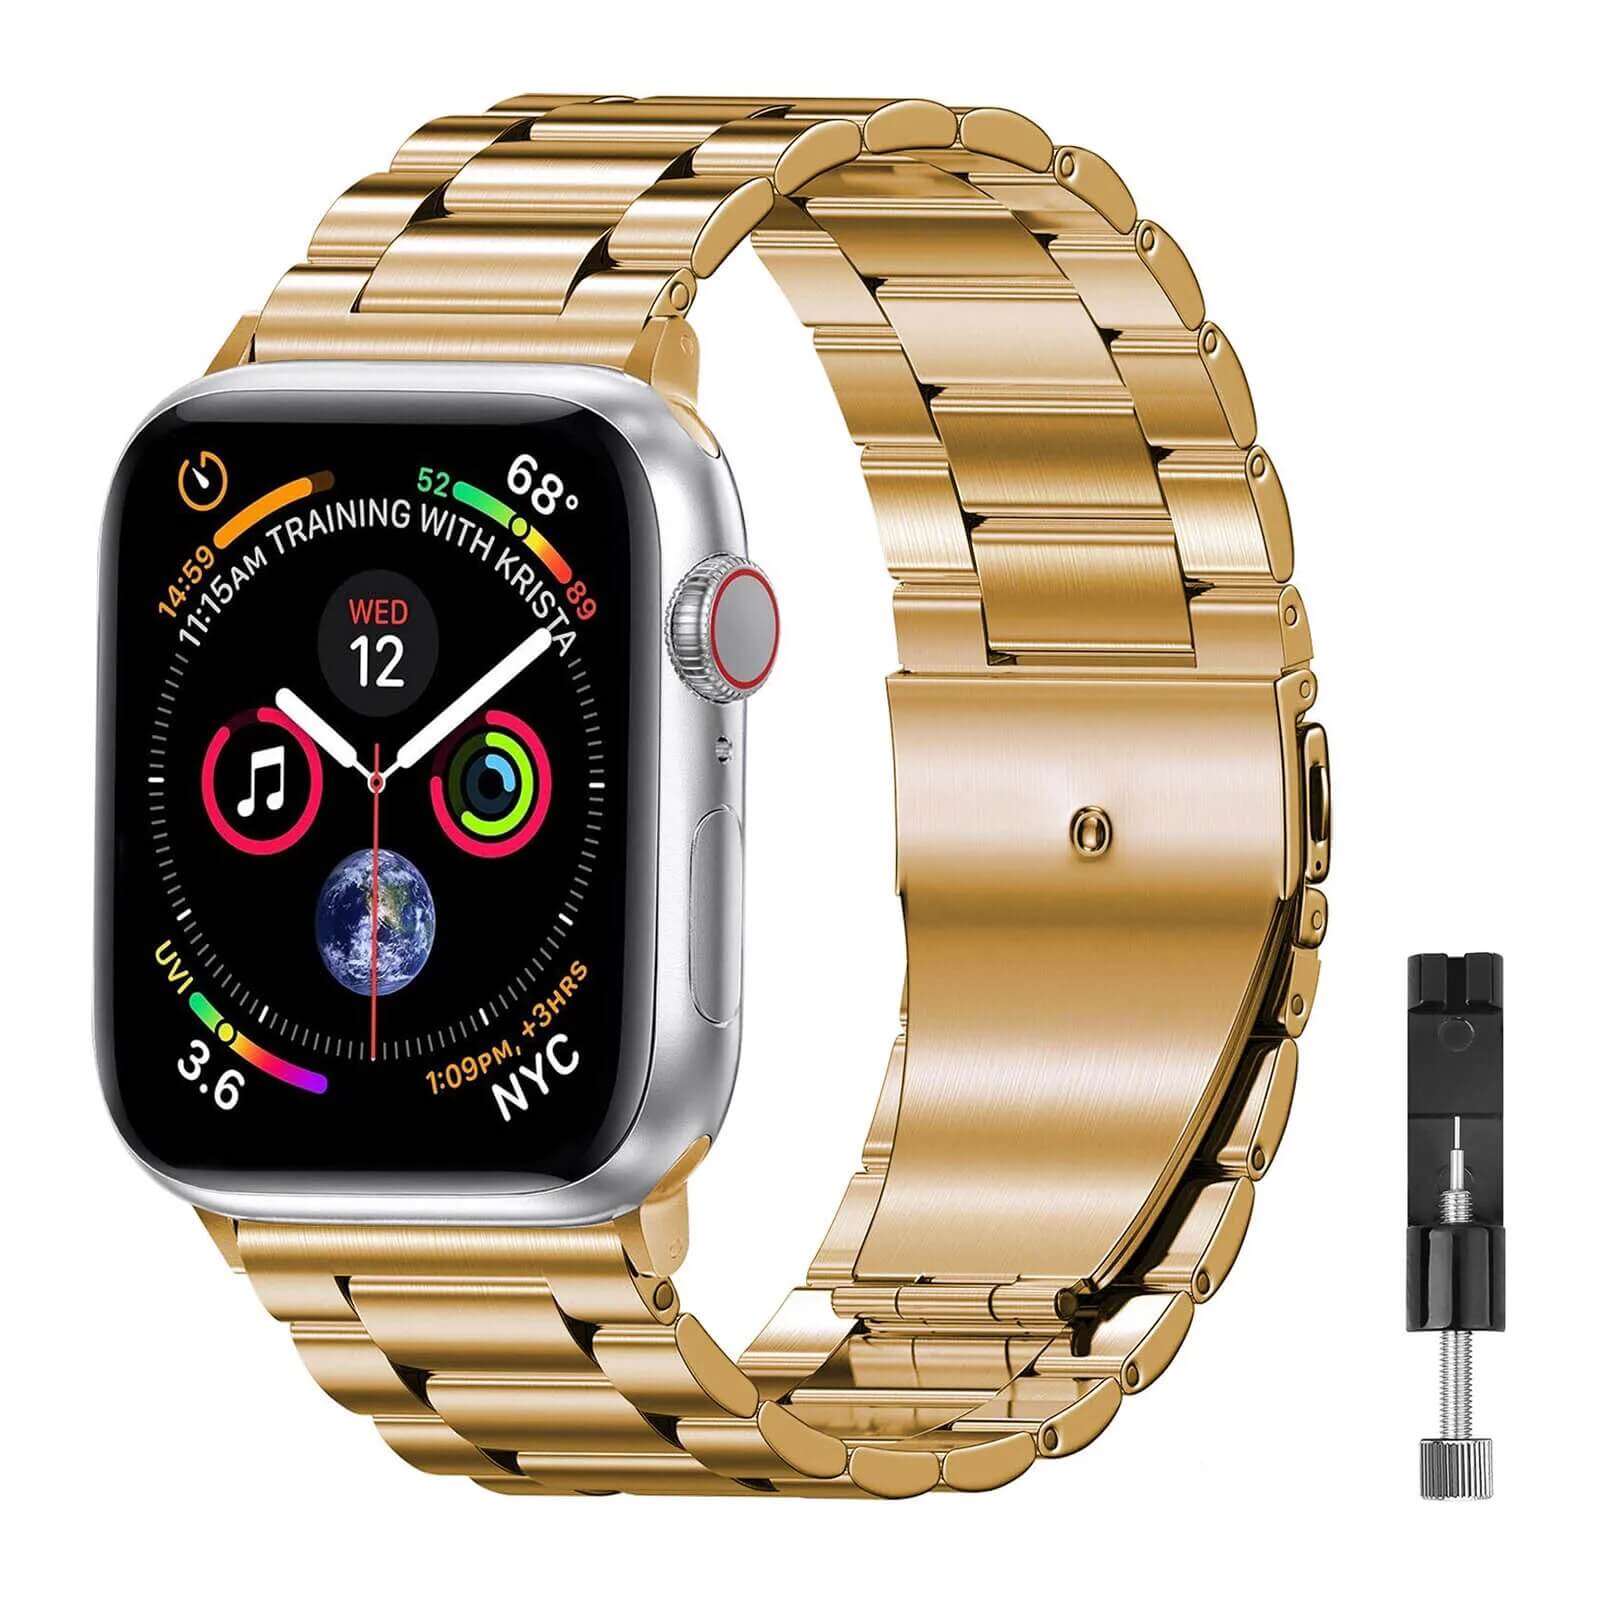 Pireware Validus Armband für die Apple Watch Gold Edelstahl